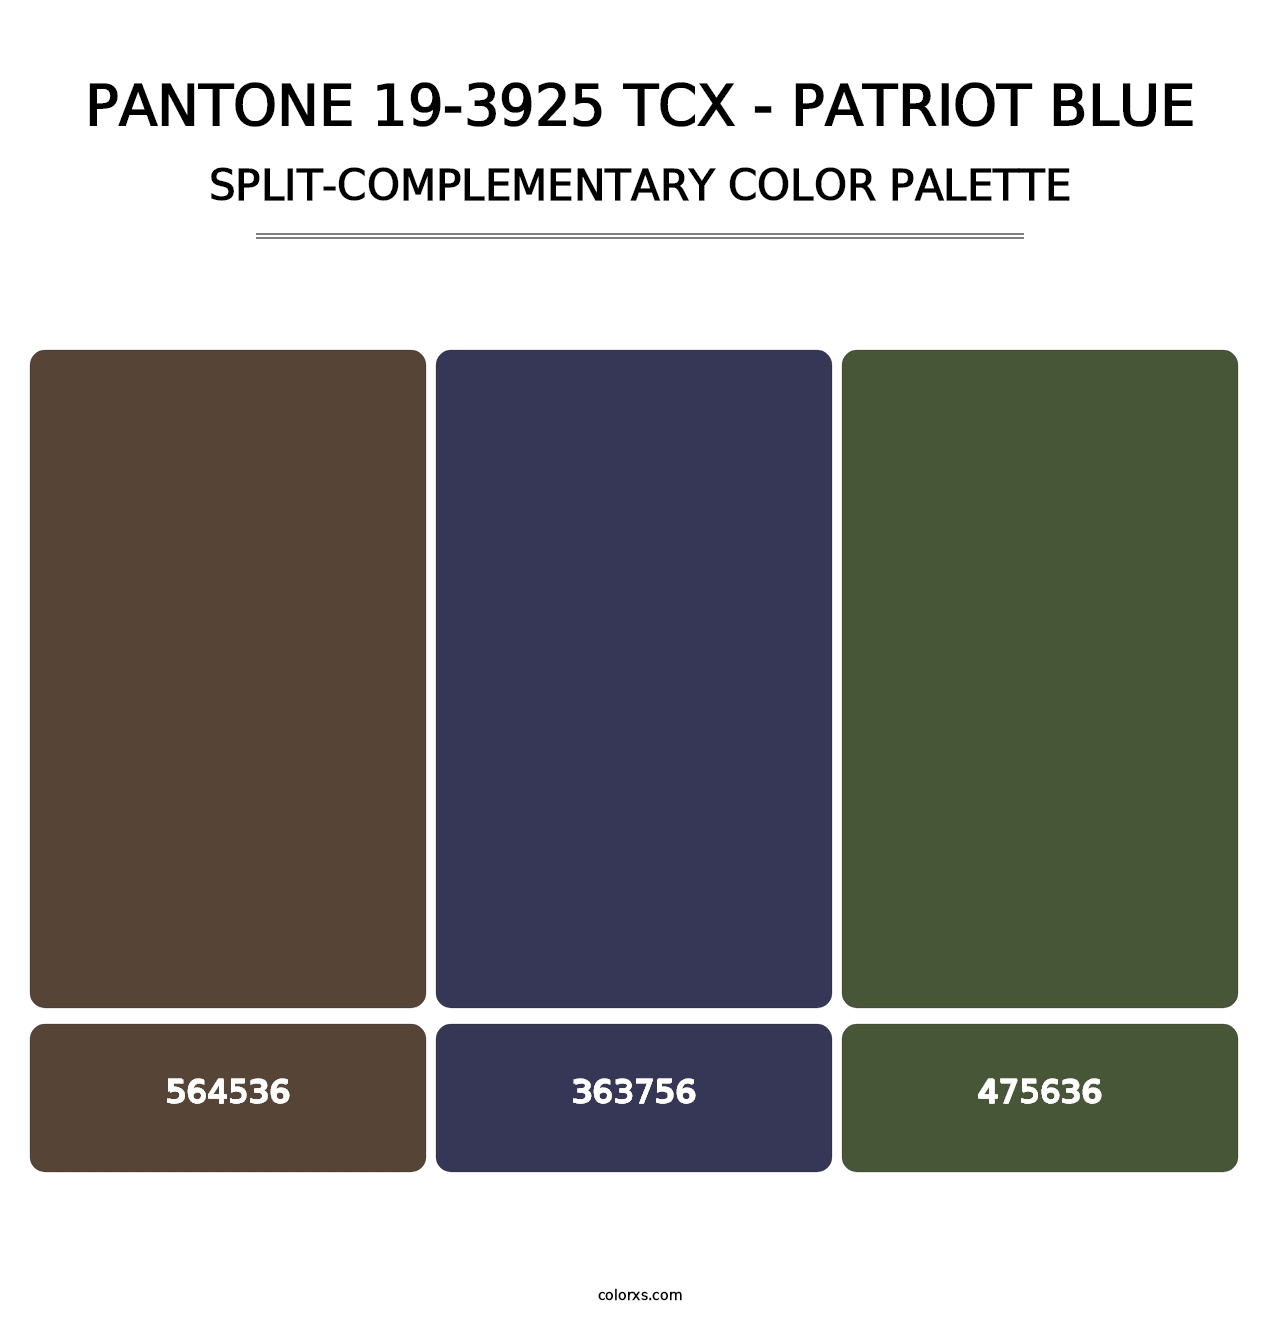 PANTONE 19-3925 TCX - Patriot Blue - Split-Complementary Color Palette